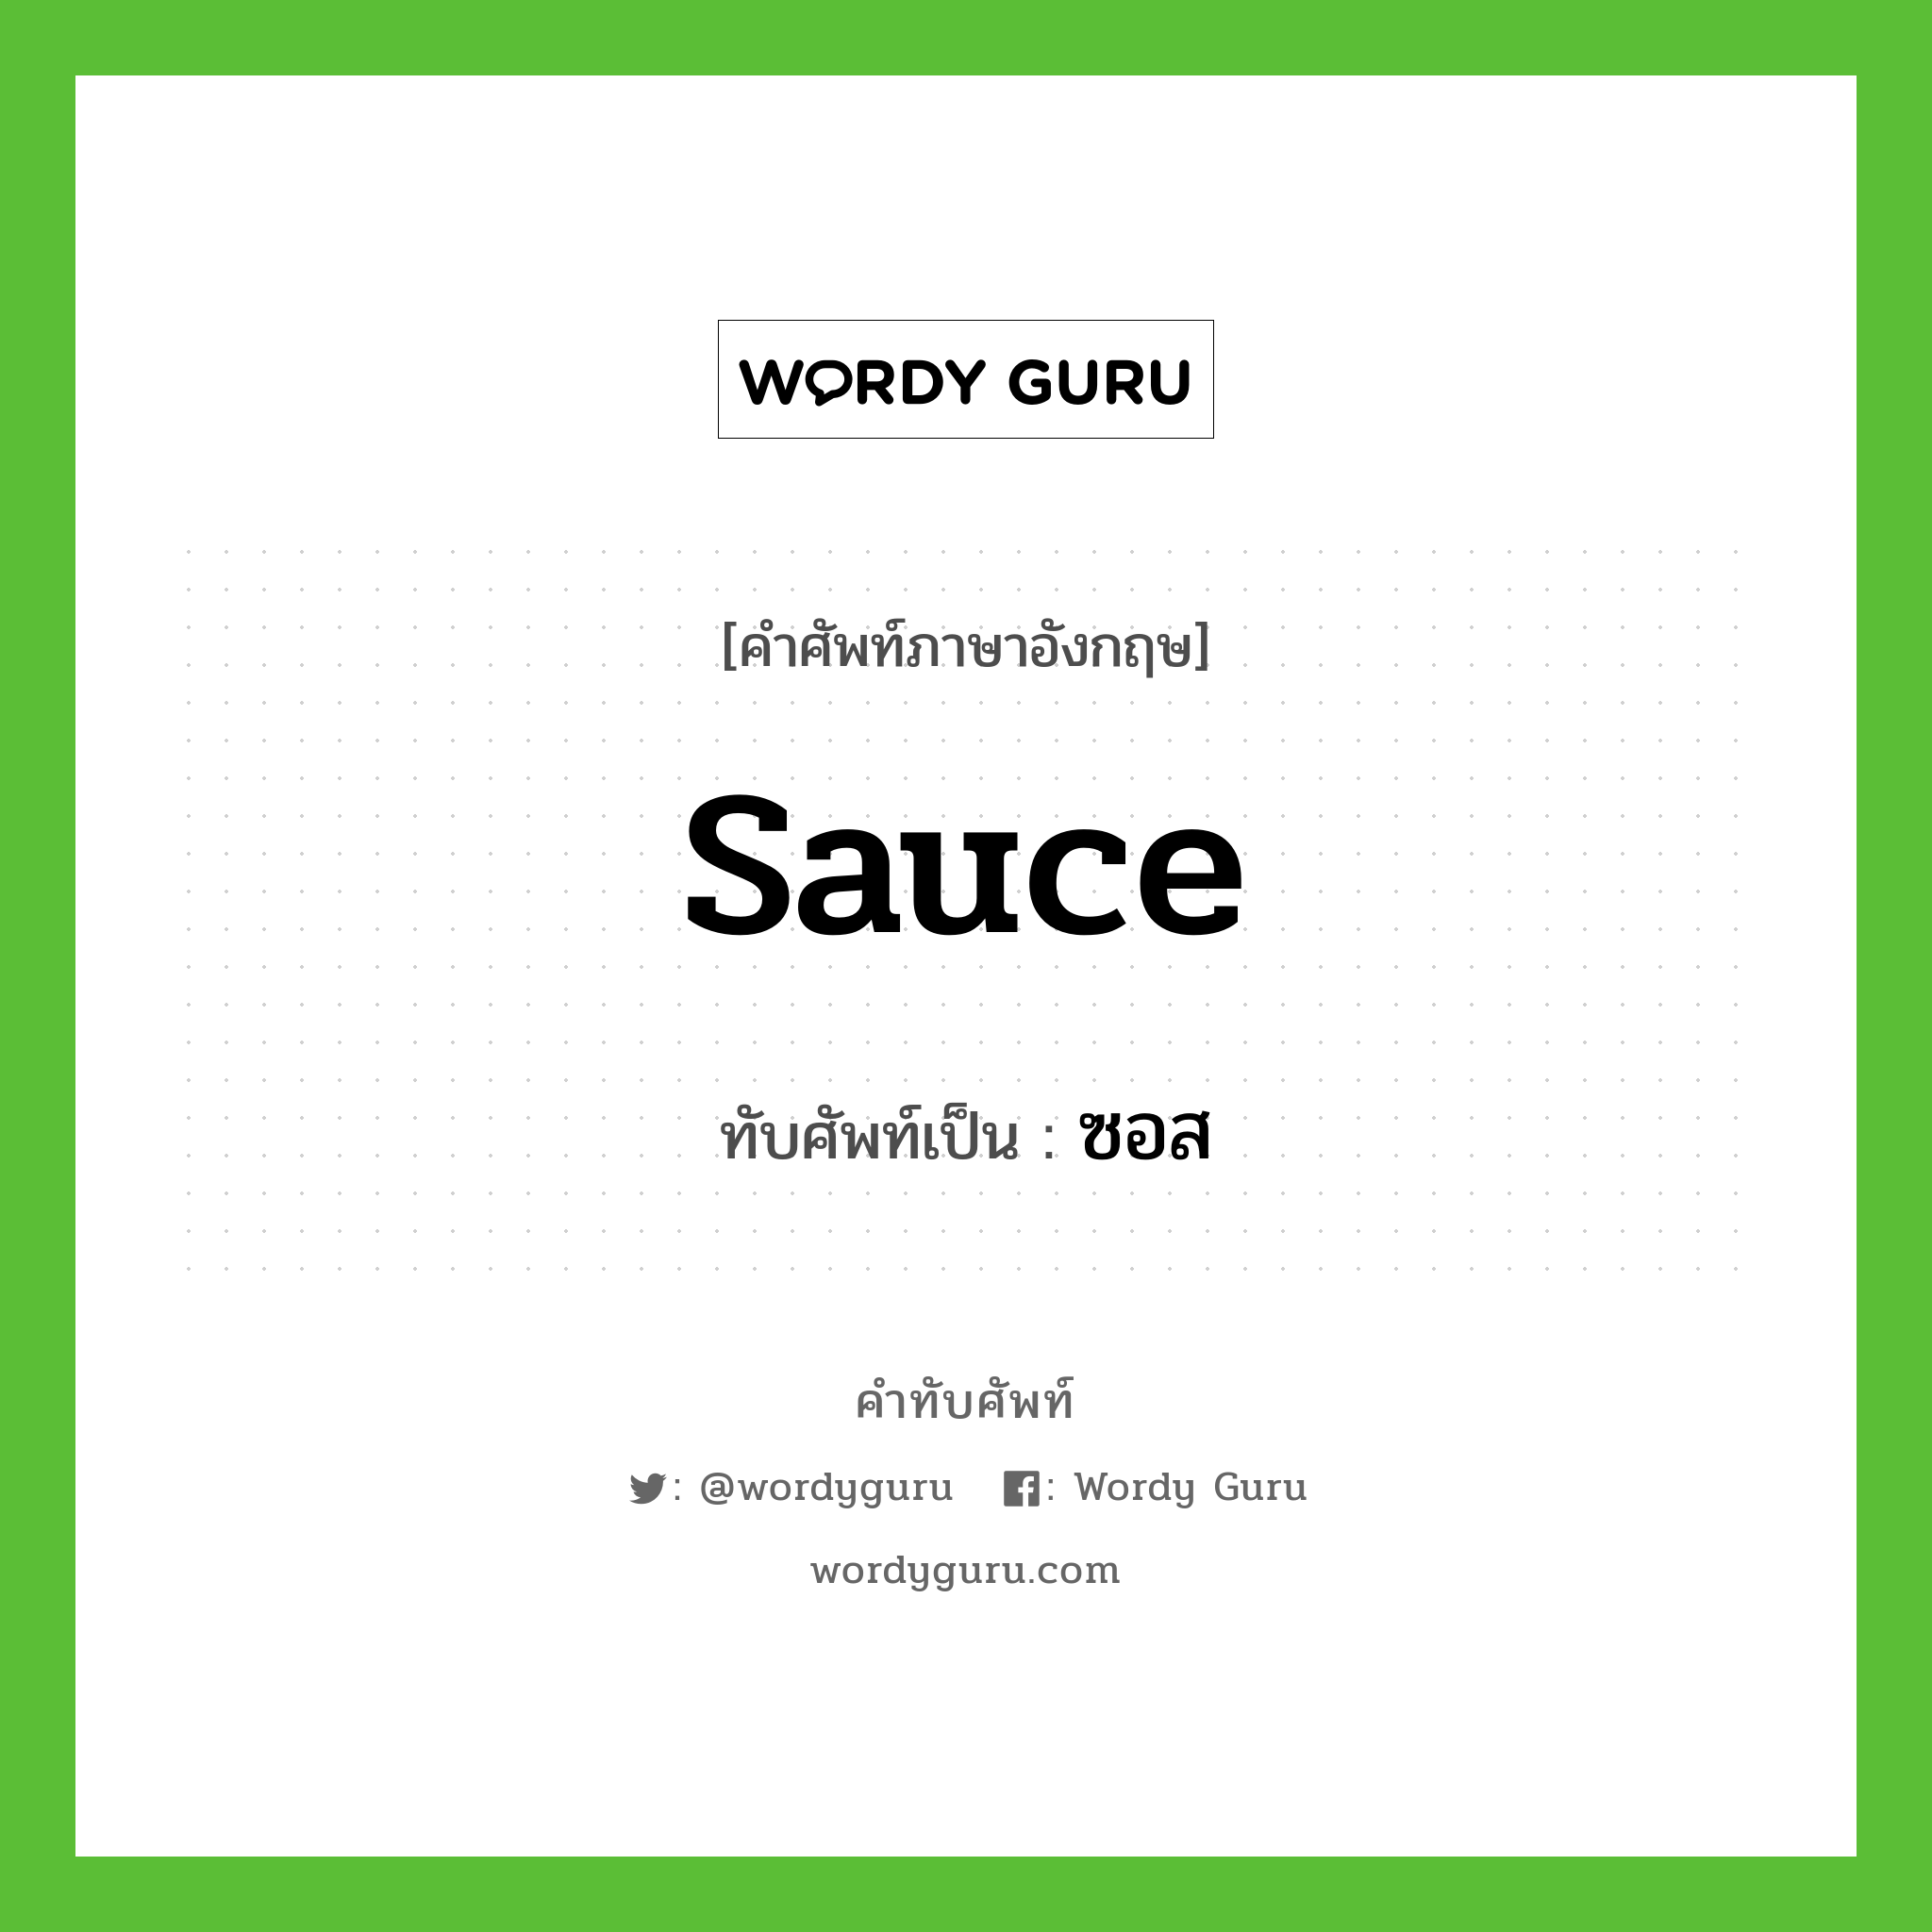 sauce เขียนเป็นคำไทยว่าอะไร?, คำศัพท์ภาษาอังกฤษ sauce ทับศัพท์เป็น ซอส